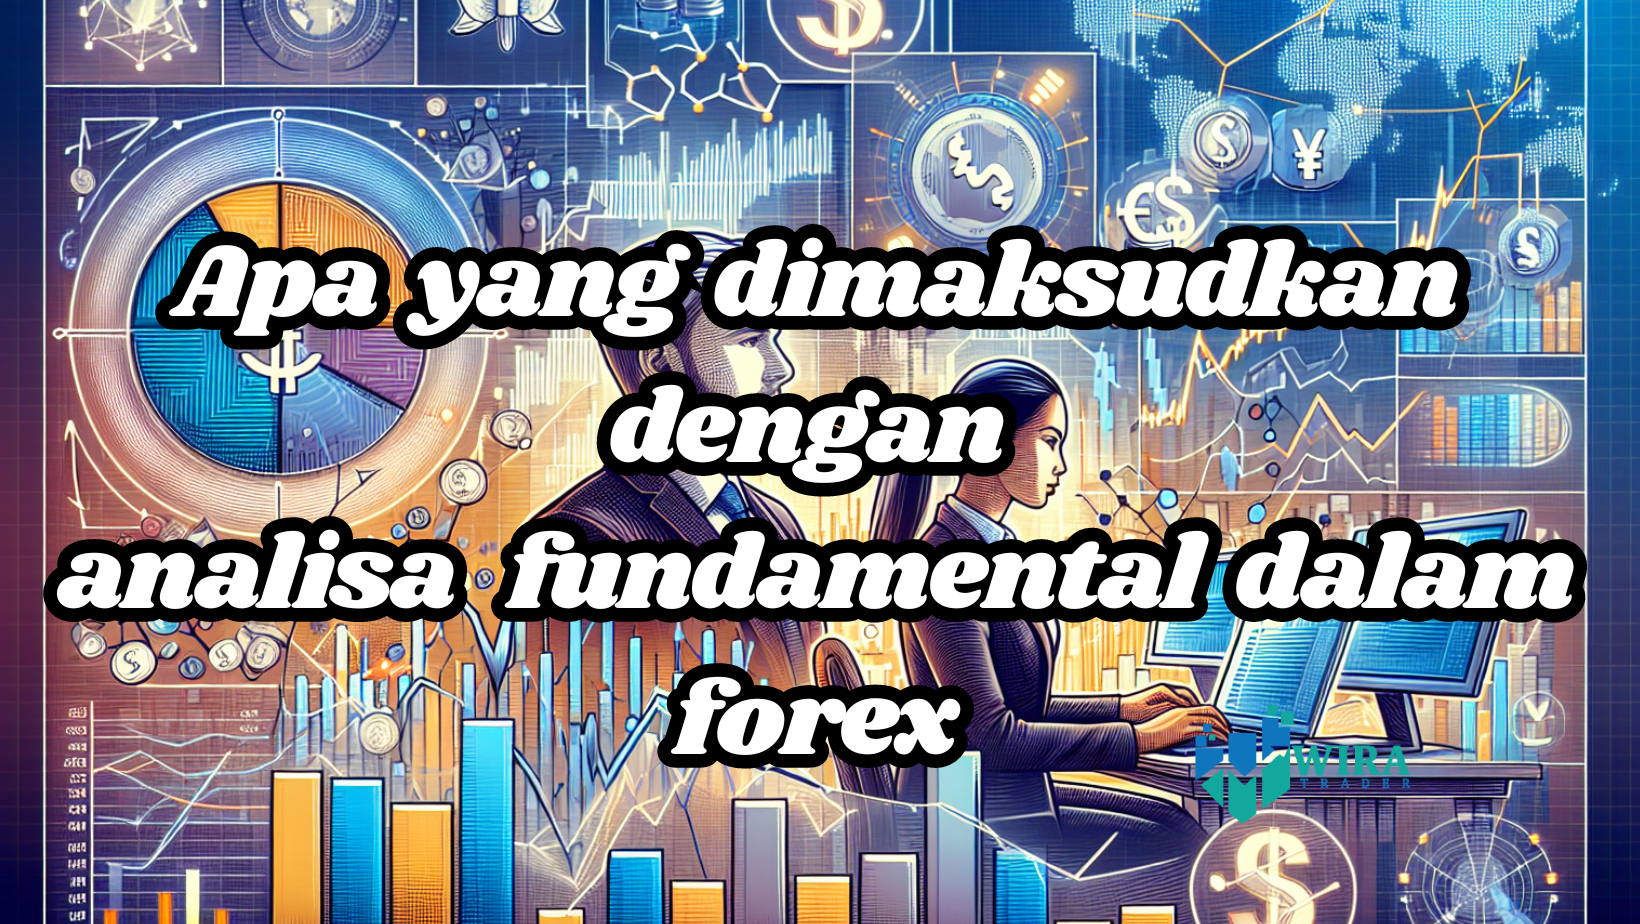 You are currently viewing Apa yang dimaksudkan dengan analisa fundamental dalam forex